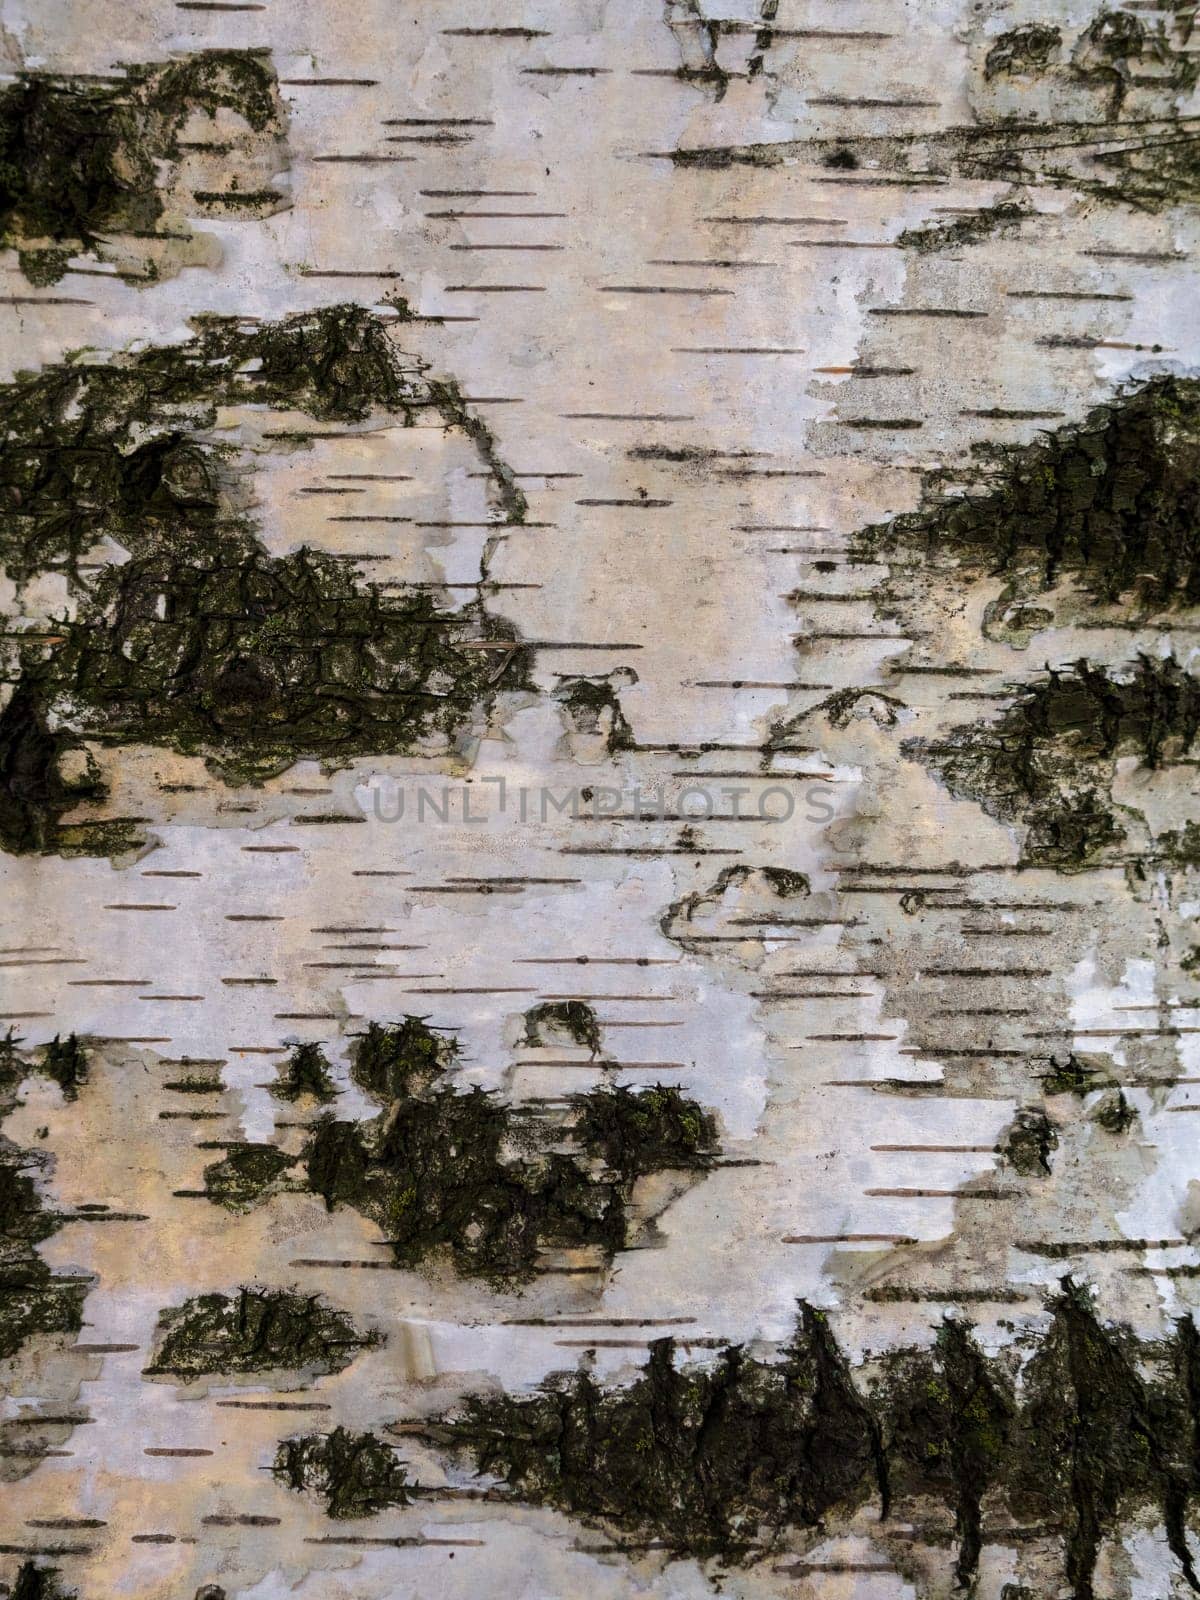 Texture of birch bark, background